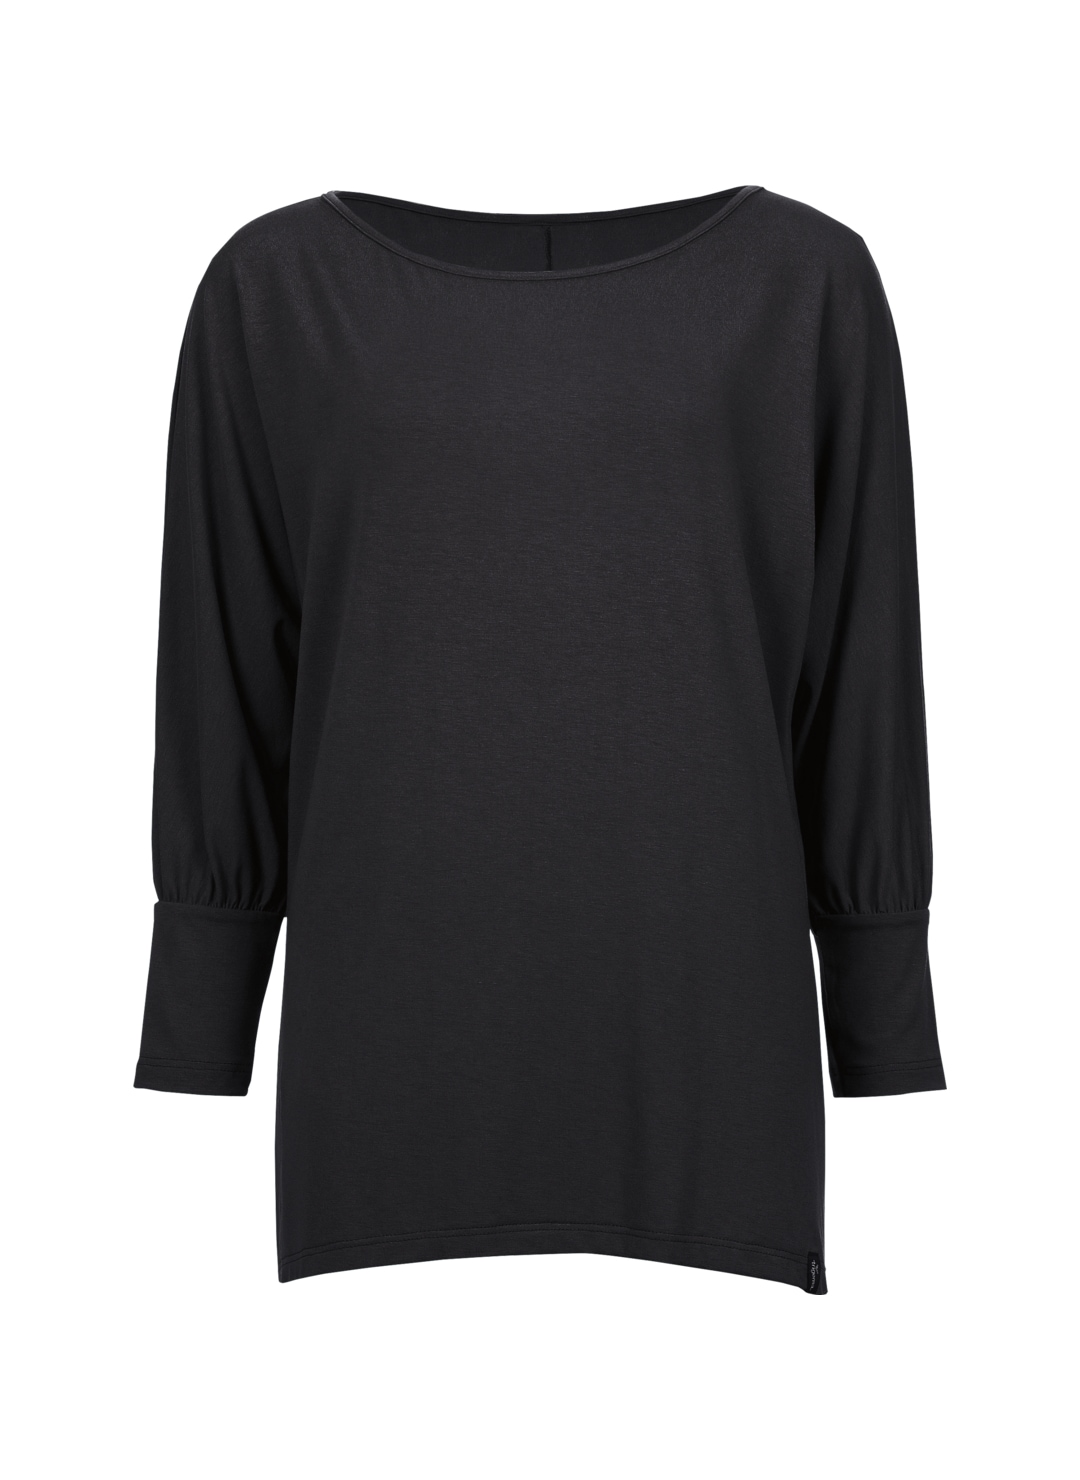 bestellen online »TRIGEMA Trigema OTTO Viskose« bei aus T-Shirt Longshirt